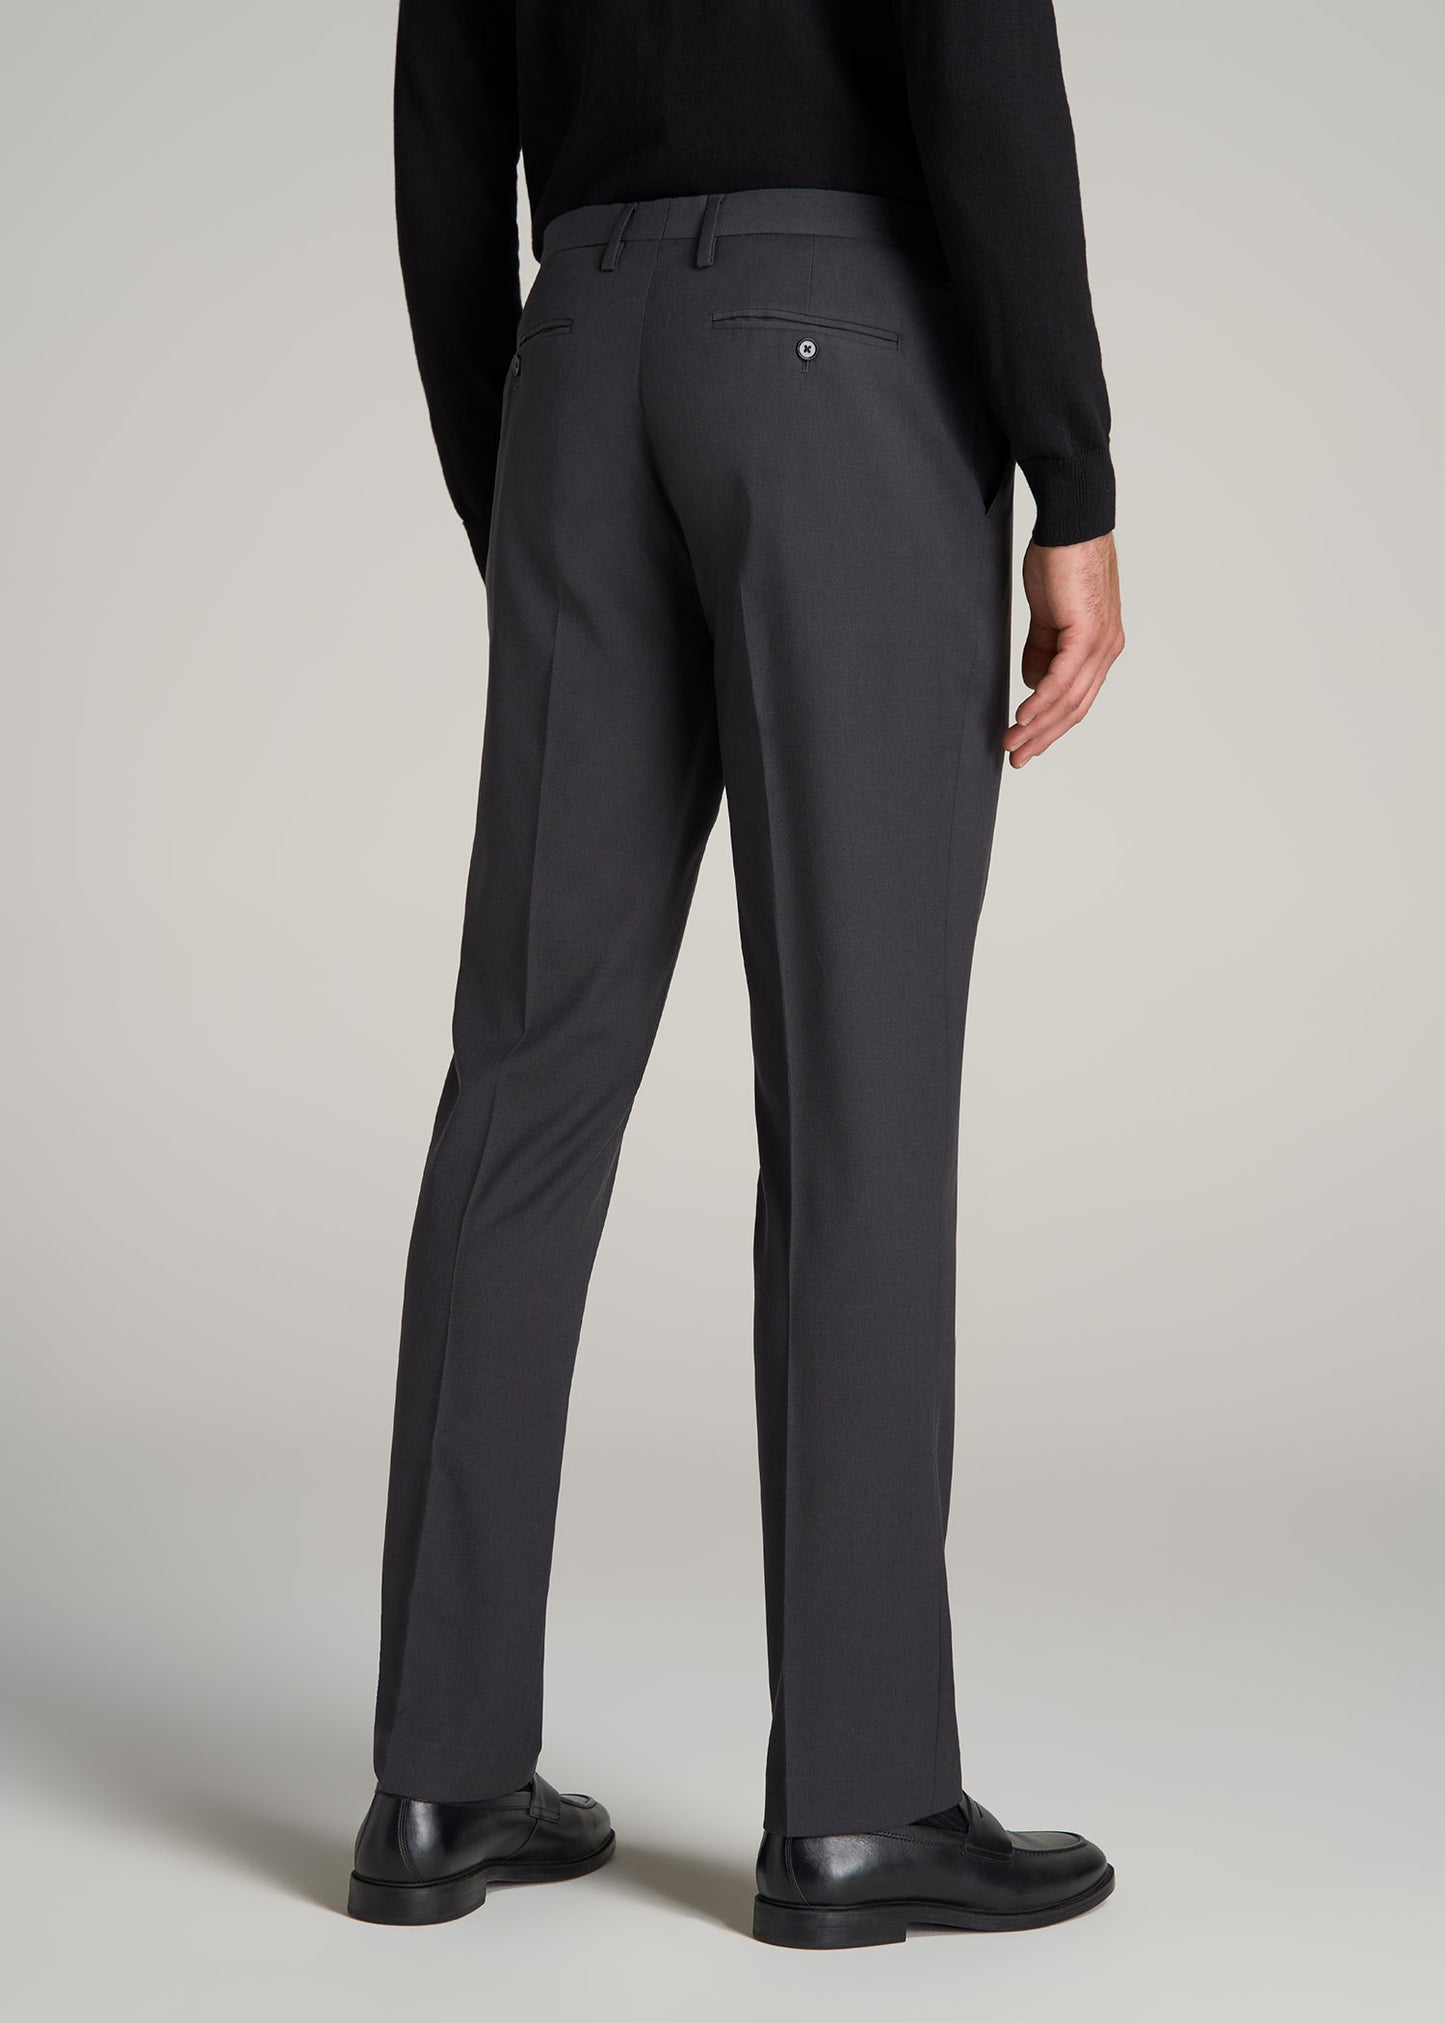 Classic Men Business Pants Stripe Fit Thin Trousers Office Casual Formal  Pants Men Suit Pant Black-Plaid 28 at Amazon Men's Clothing store